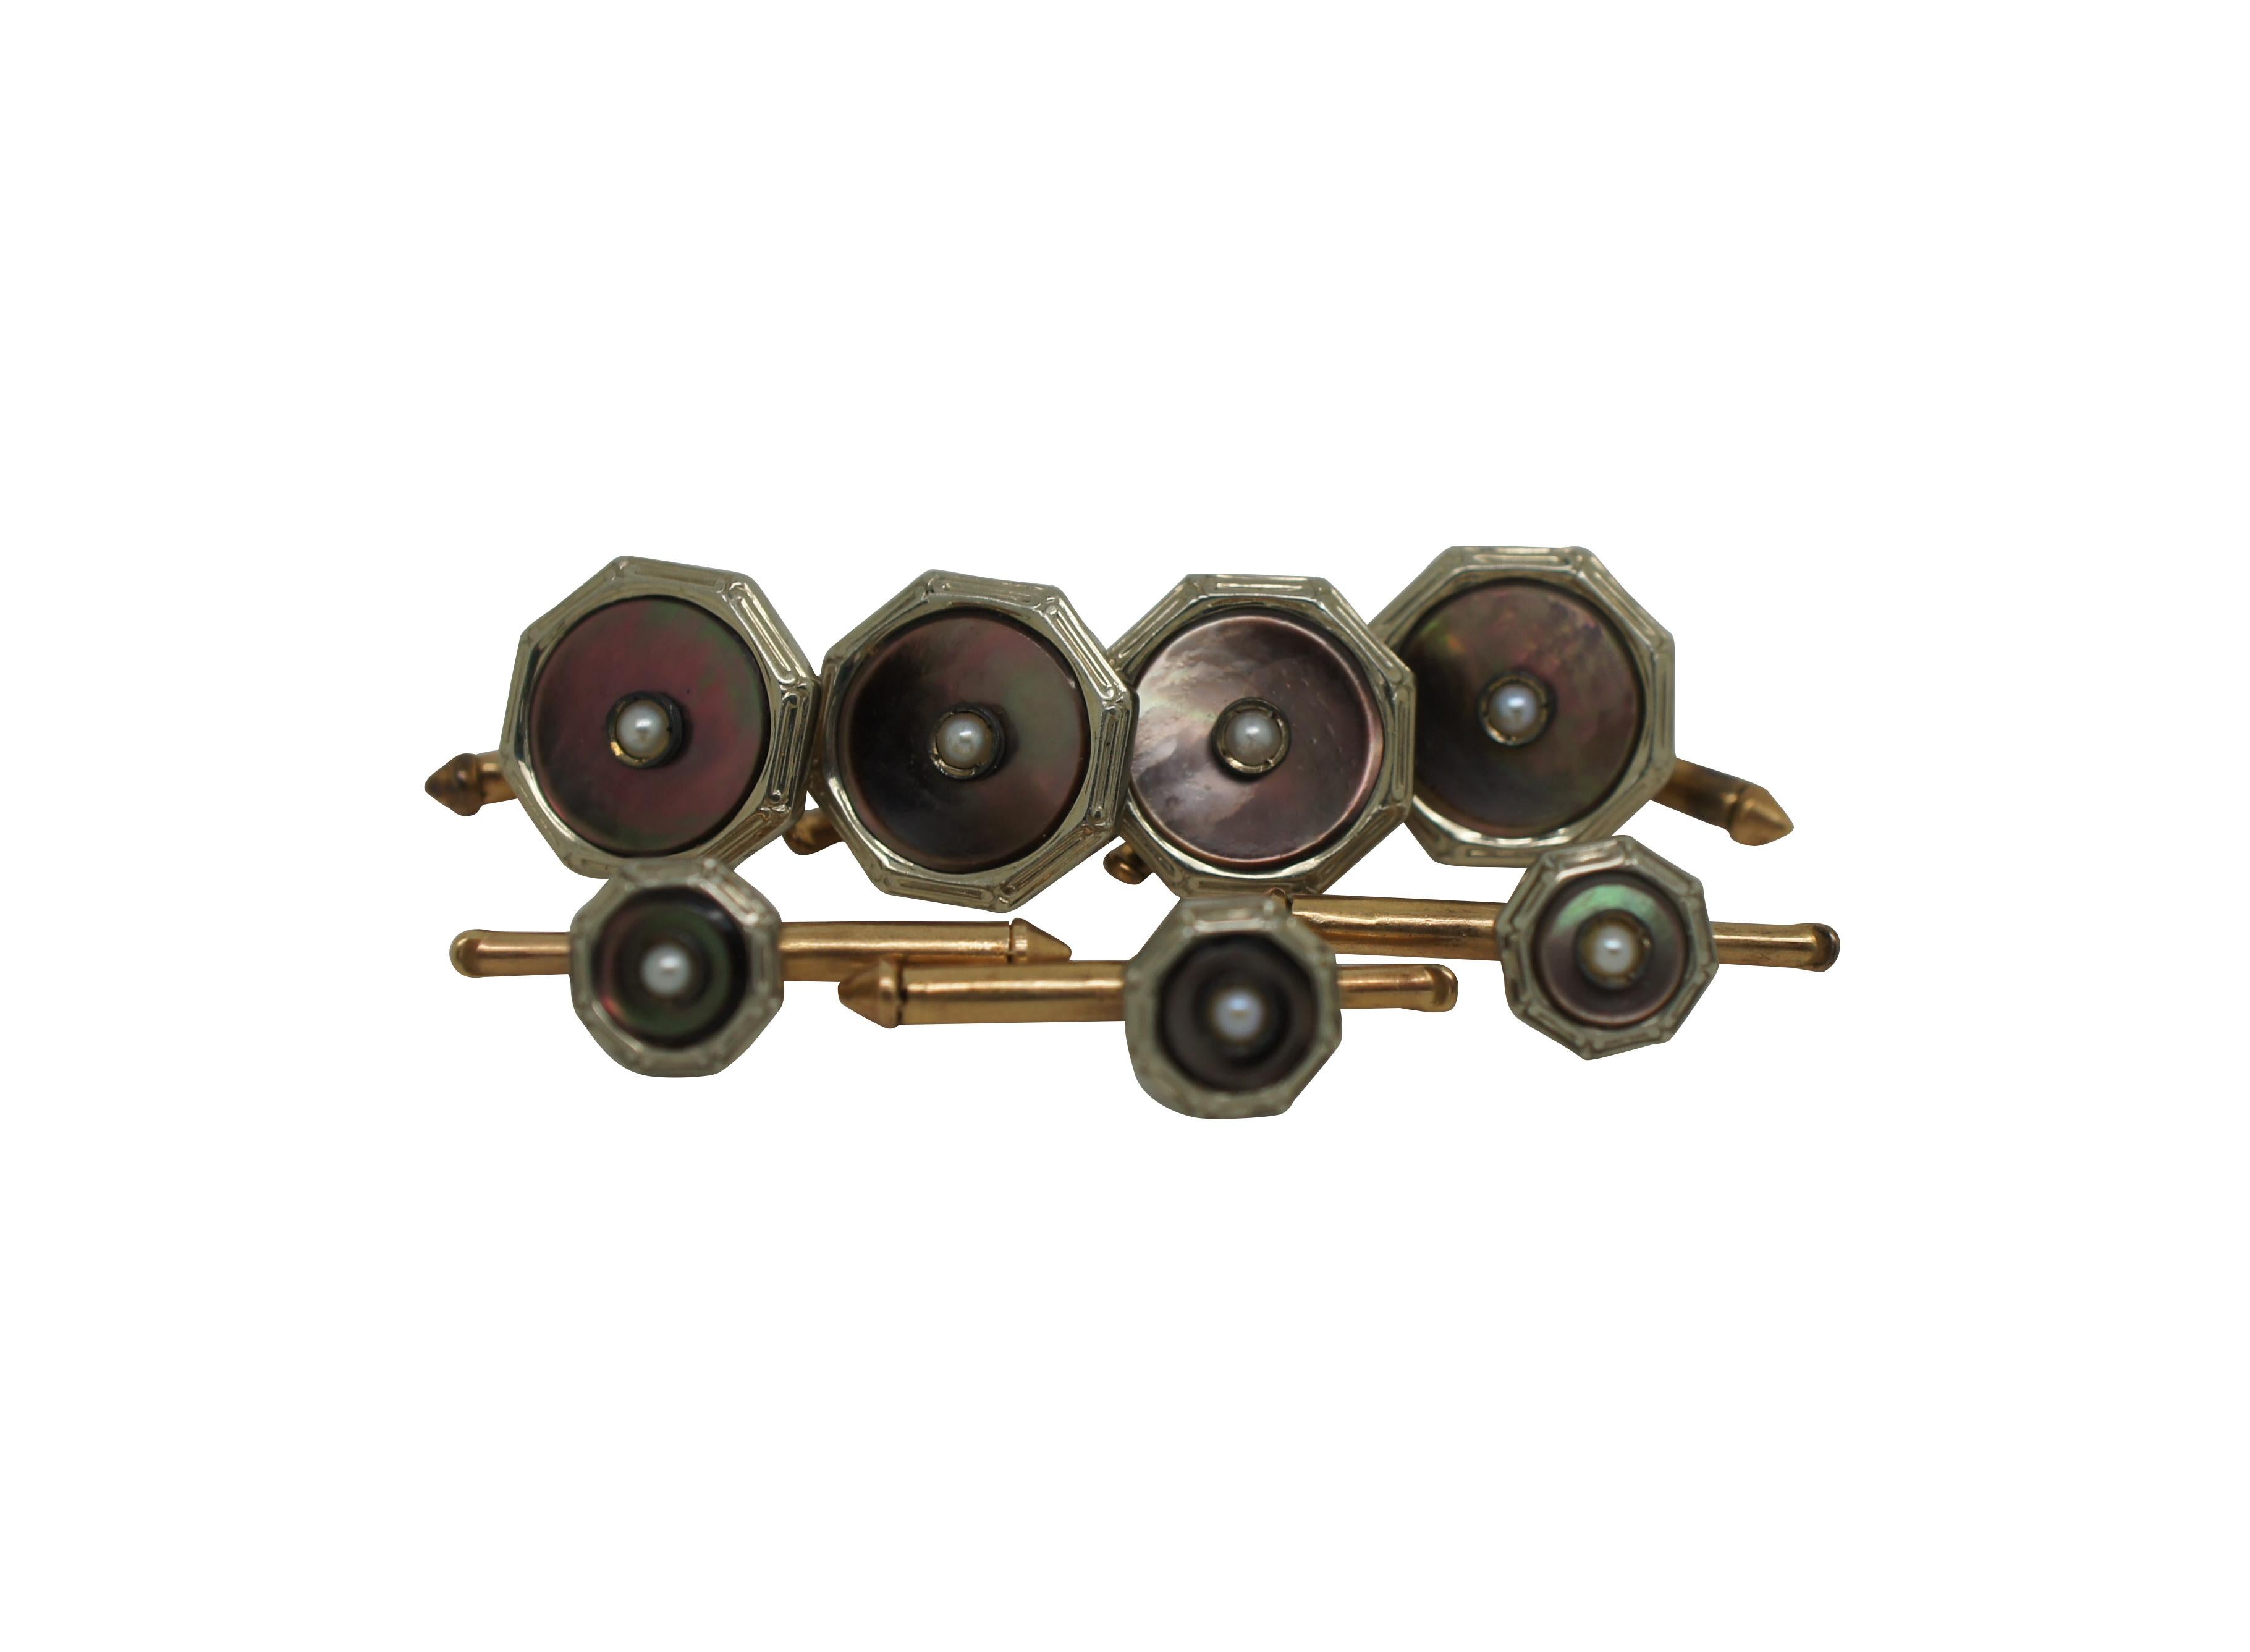 Vintage Manschettenknöpfe und Knopfstecker aus 10-karätigem Gold in achteckiger Form mit zentralen Perlen.

Abmessungen:
Manschettenknöpfe - 0,5